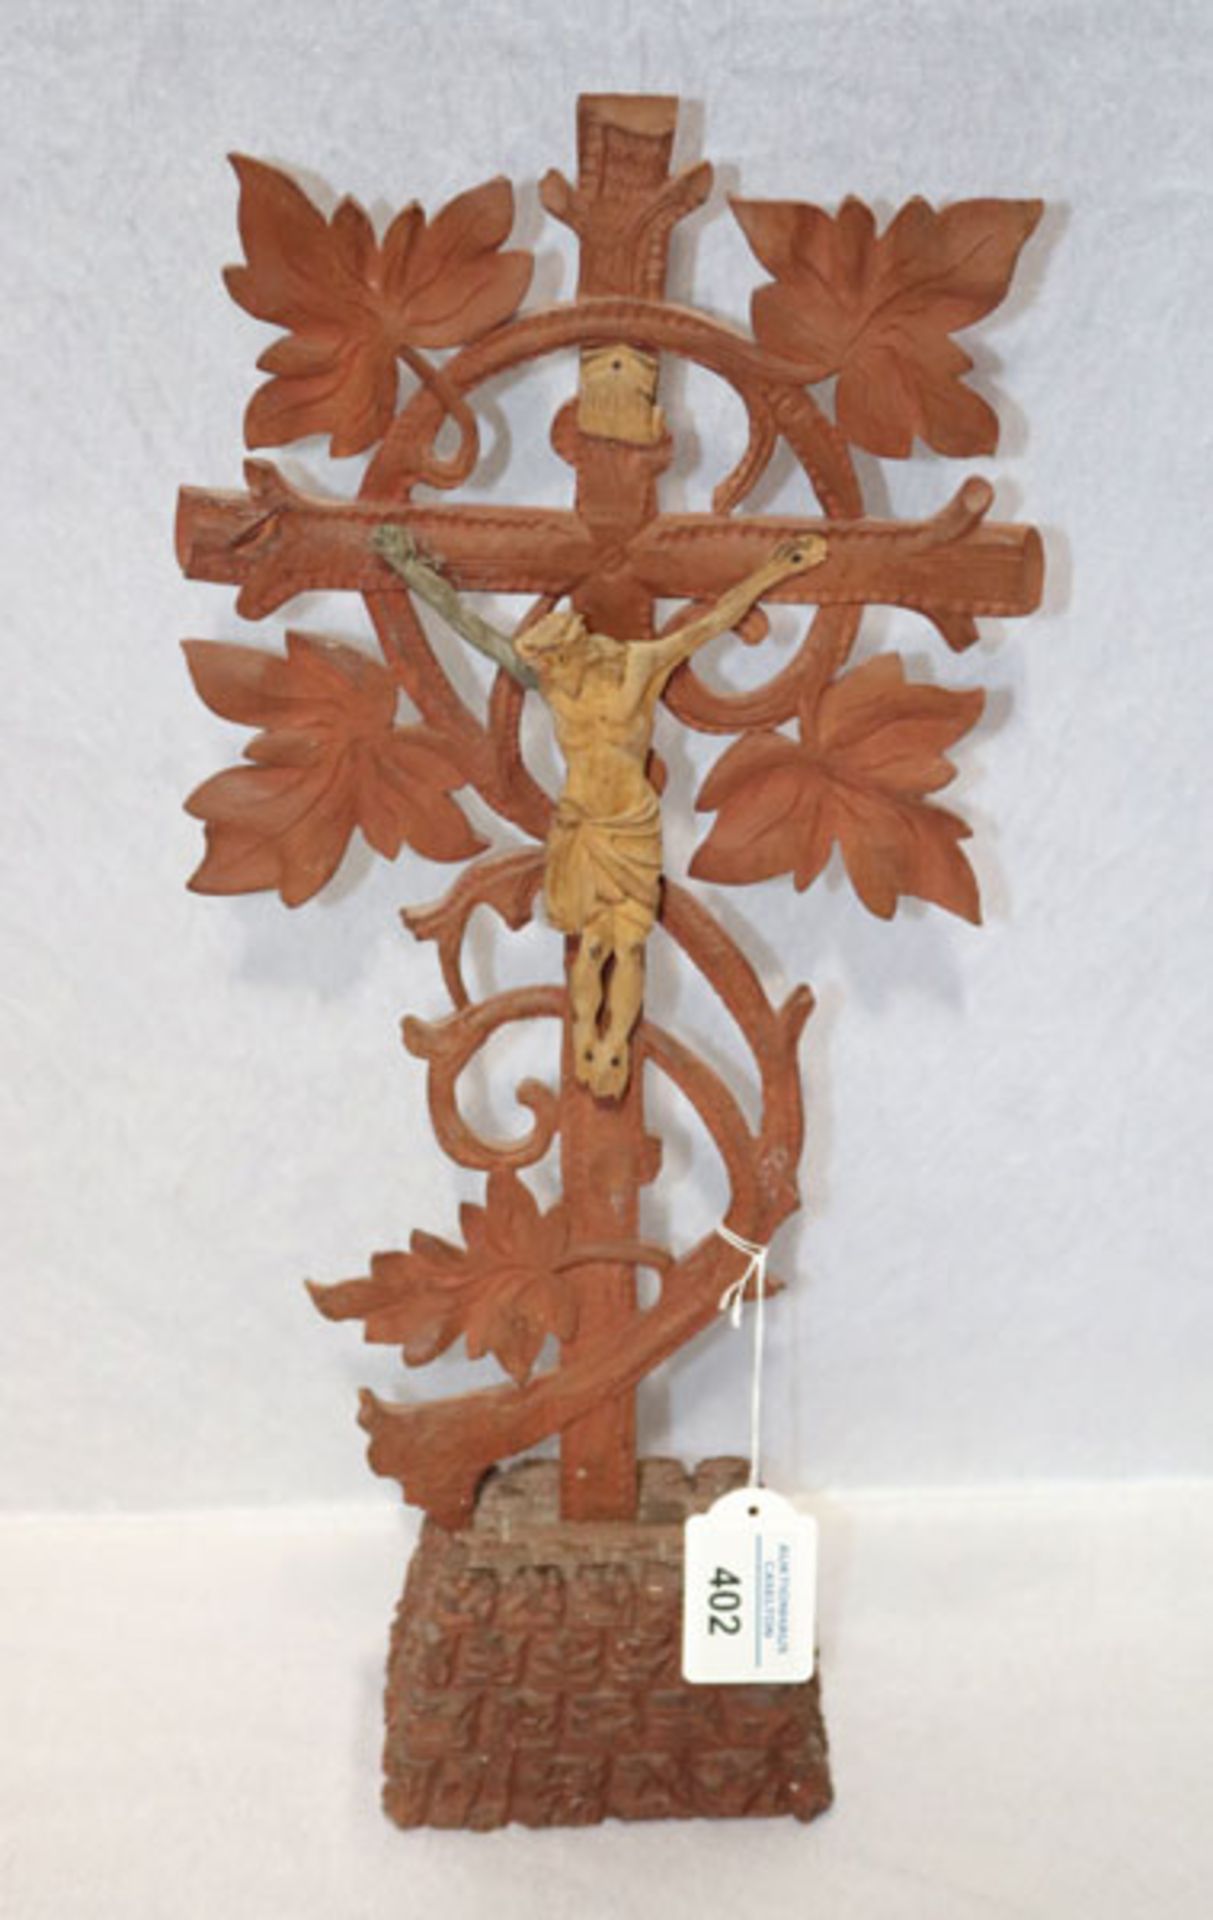 Standkreuz mit Korpus Christi und Rankendekor, um 1900, H 43 cm, B 20 cm, Altersspuren,